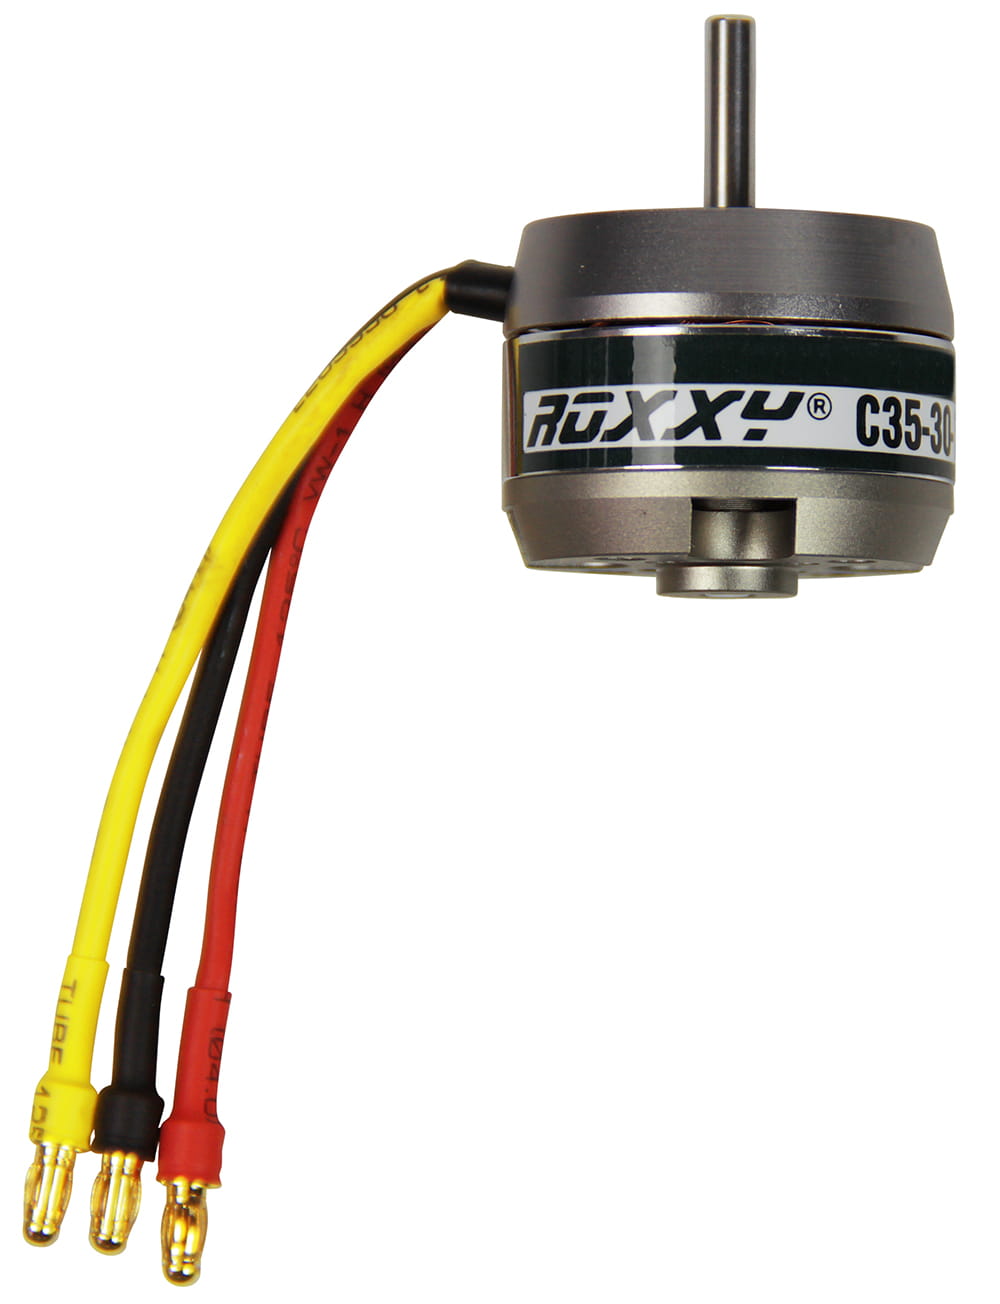 Multiplex ROXXY Brushless Motor BL Outrunner C35-30-800kV